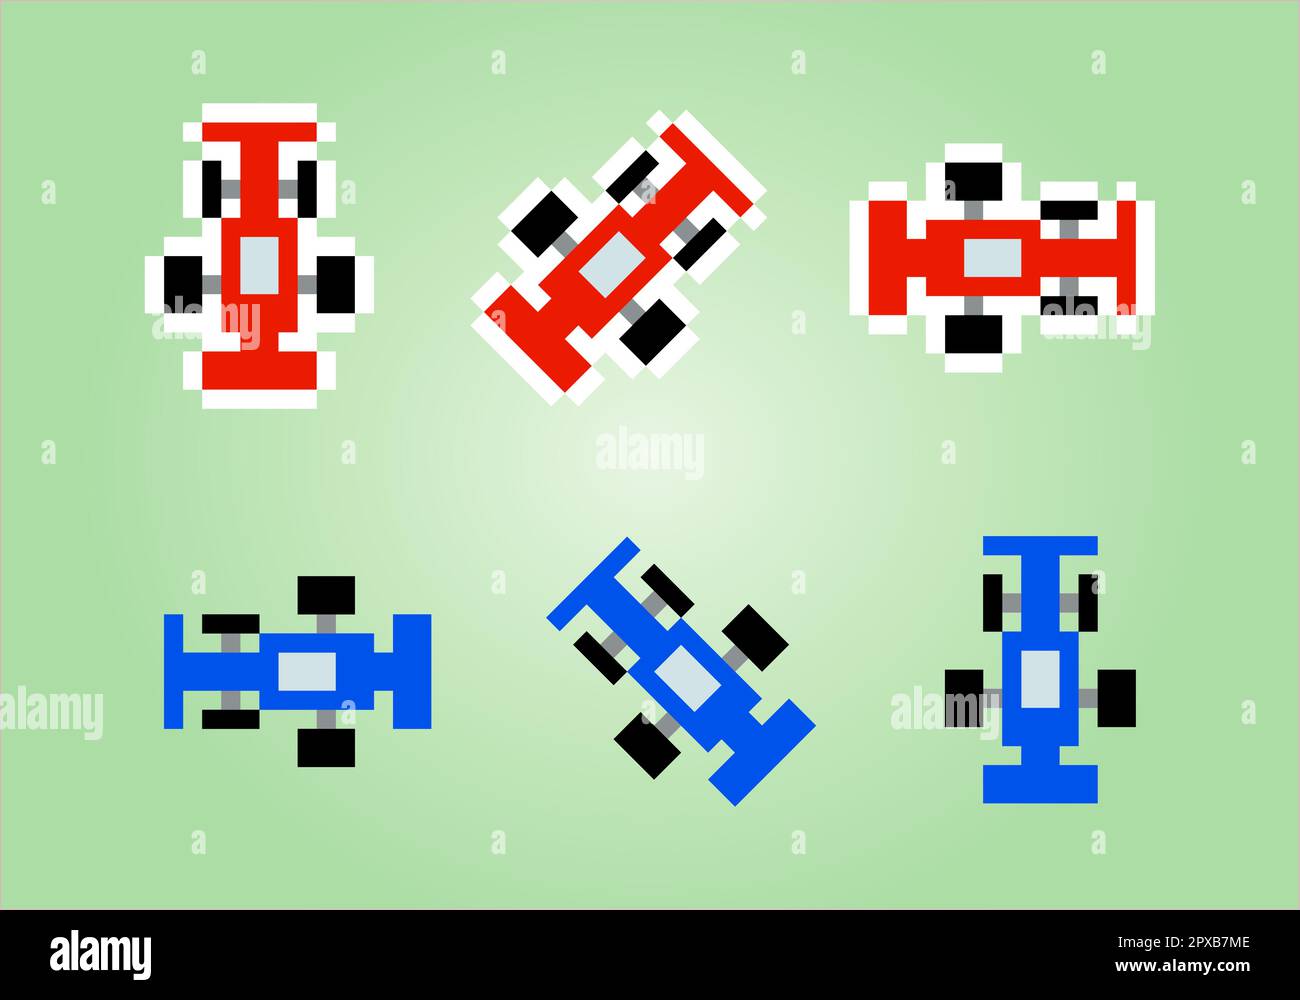 8 bits voiture de sport pixel art. Illustration vectorielle d'un motif de point de croix de voiture. Illustration de Vecteur